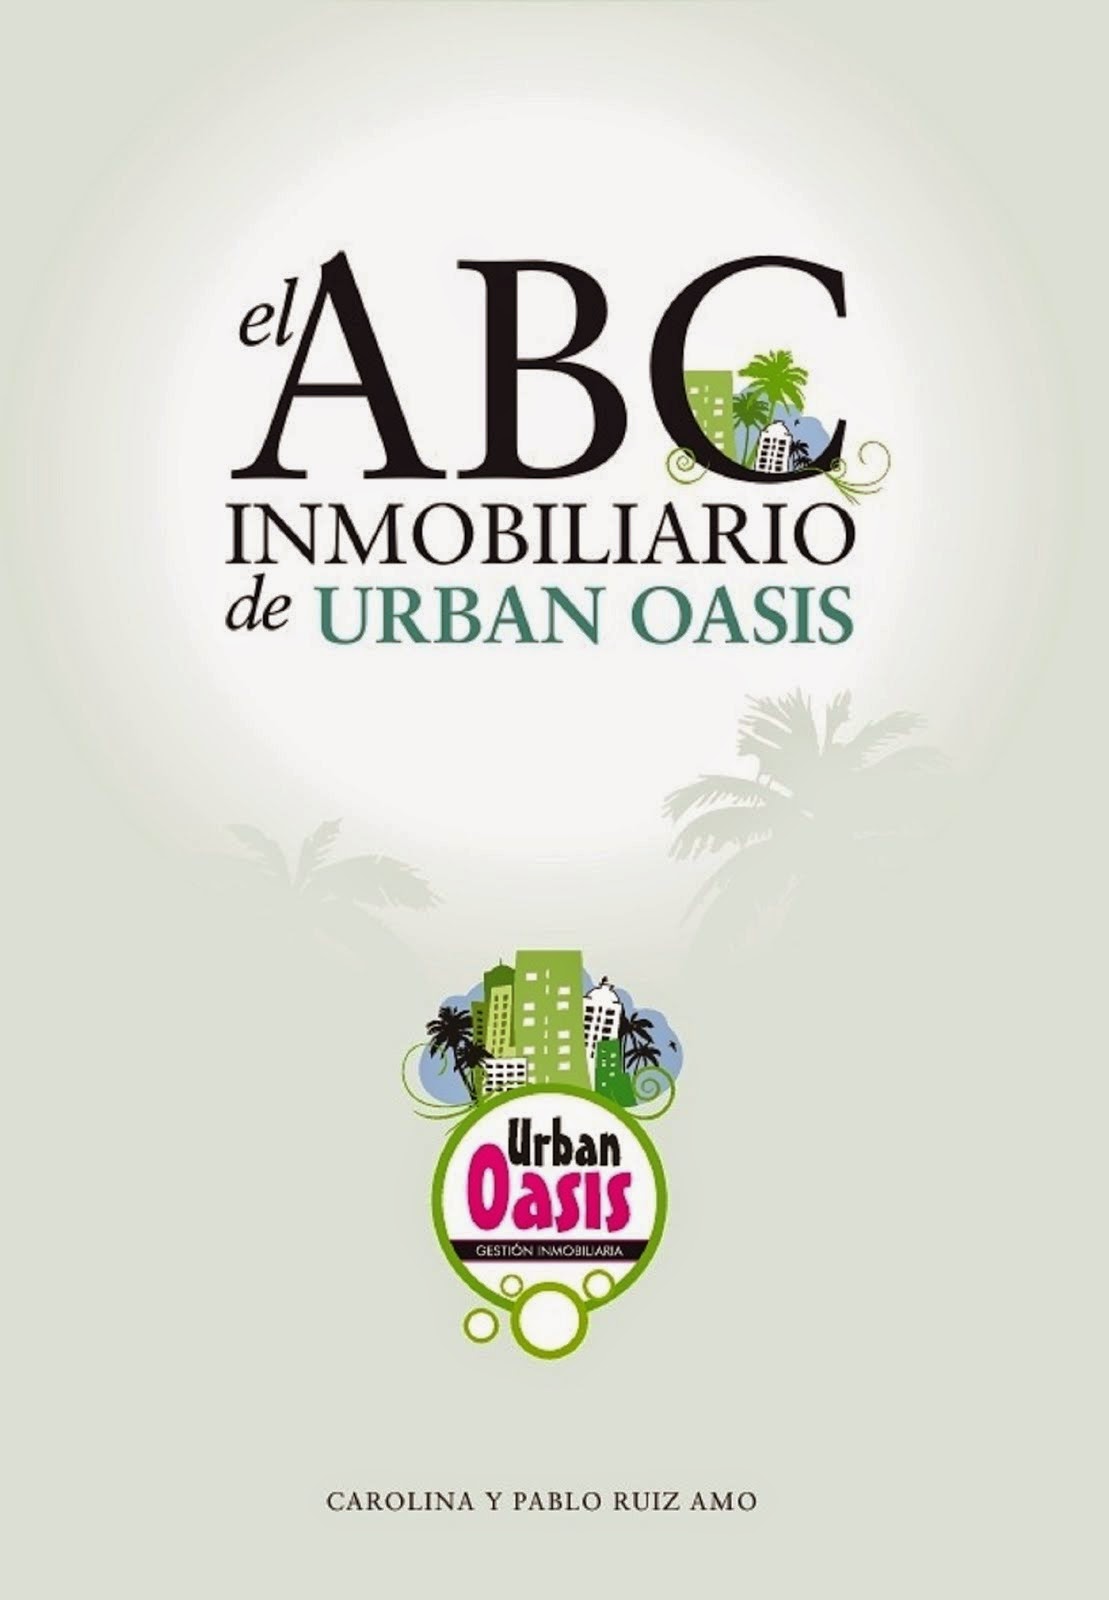 "El ABC Inmobiliario de Urban Oasis"